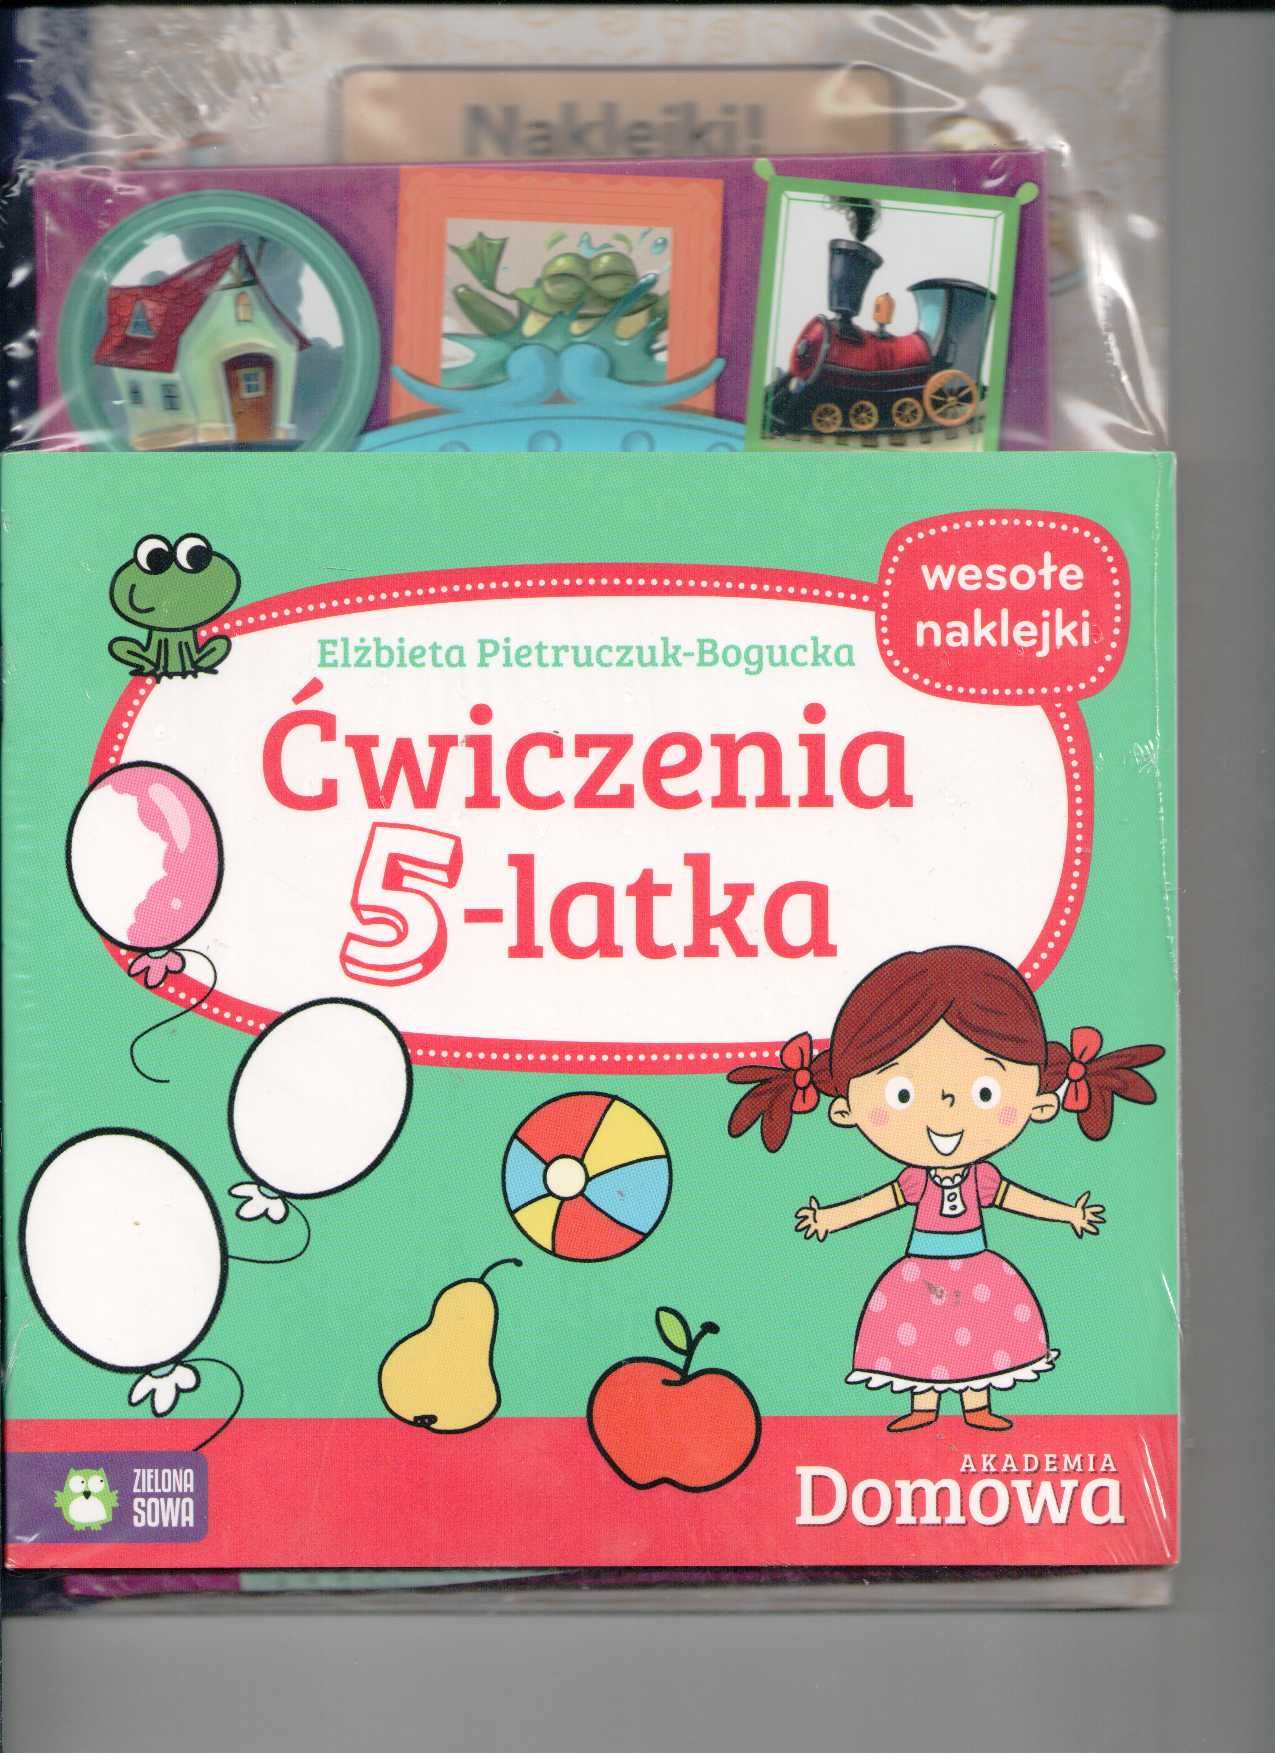 Pakiet dla 5-latka  Akademia Domowa Wyd. Zielona Sowa